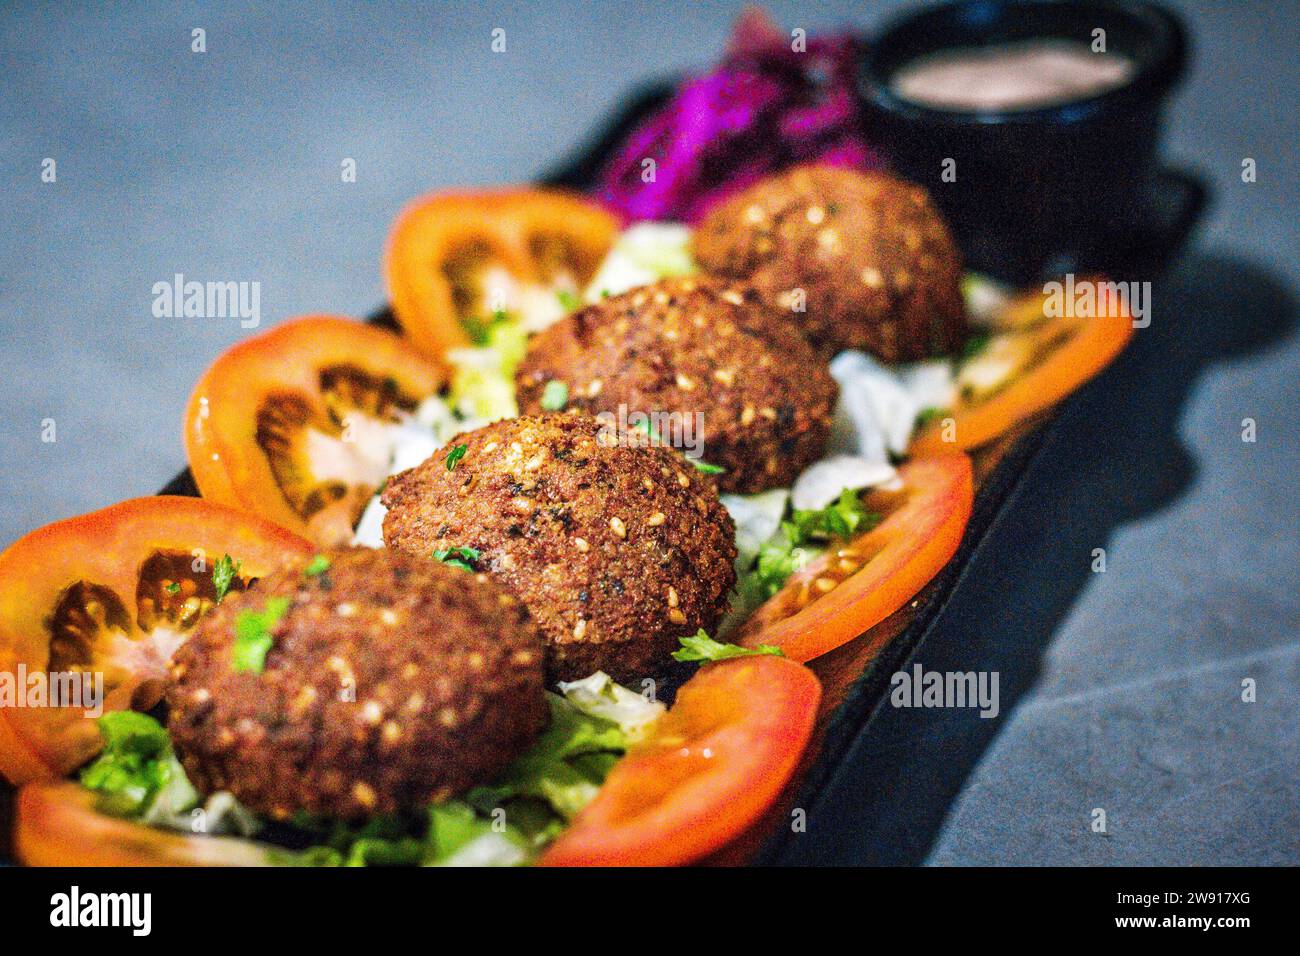 Eine Portion heiße Mezza – Falafel serviert mit Tomaten, Salat und Rotkohl Stockfoto